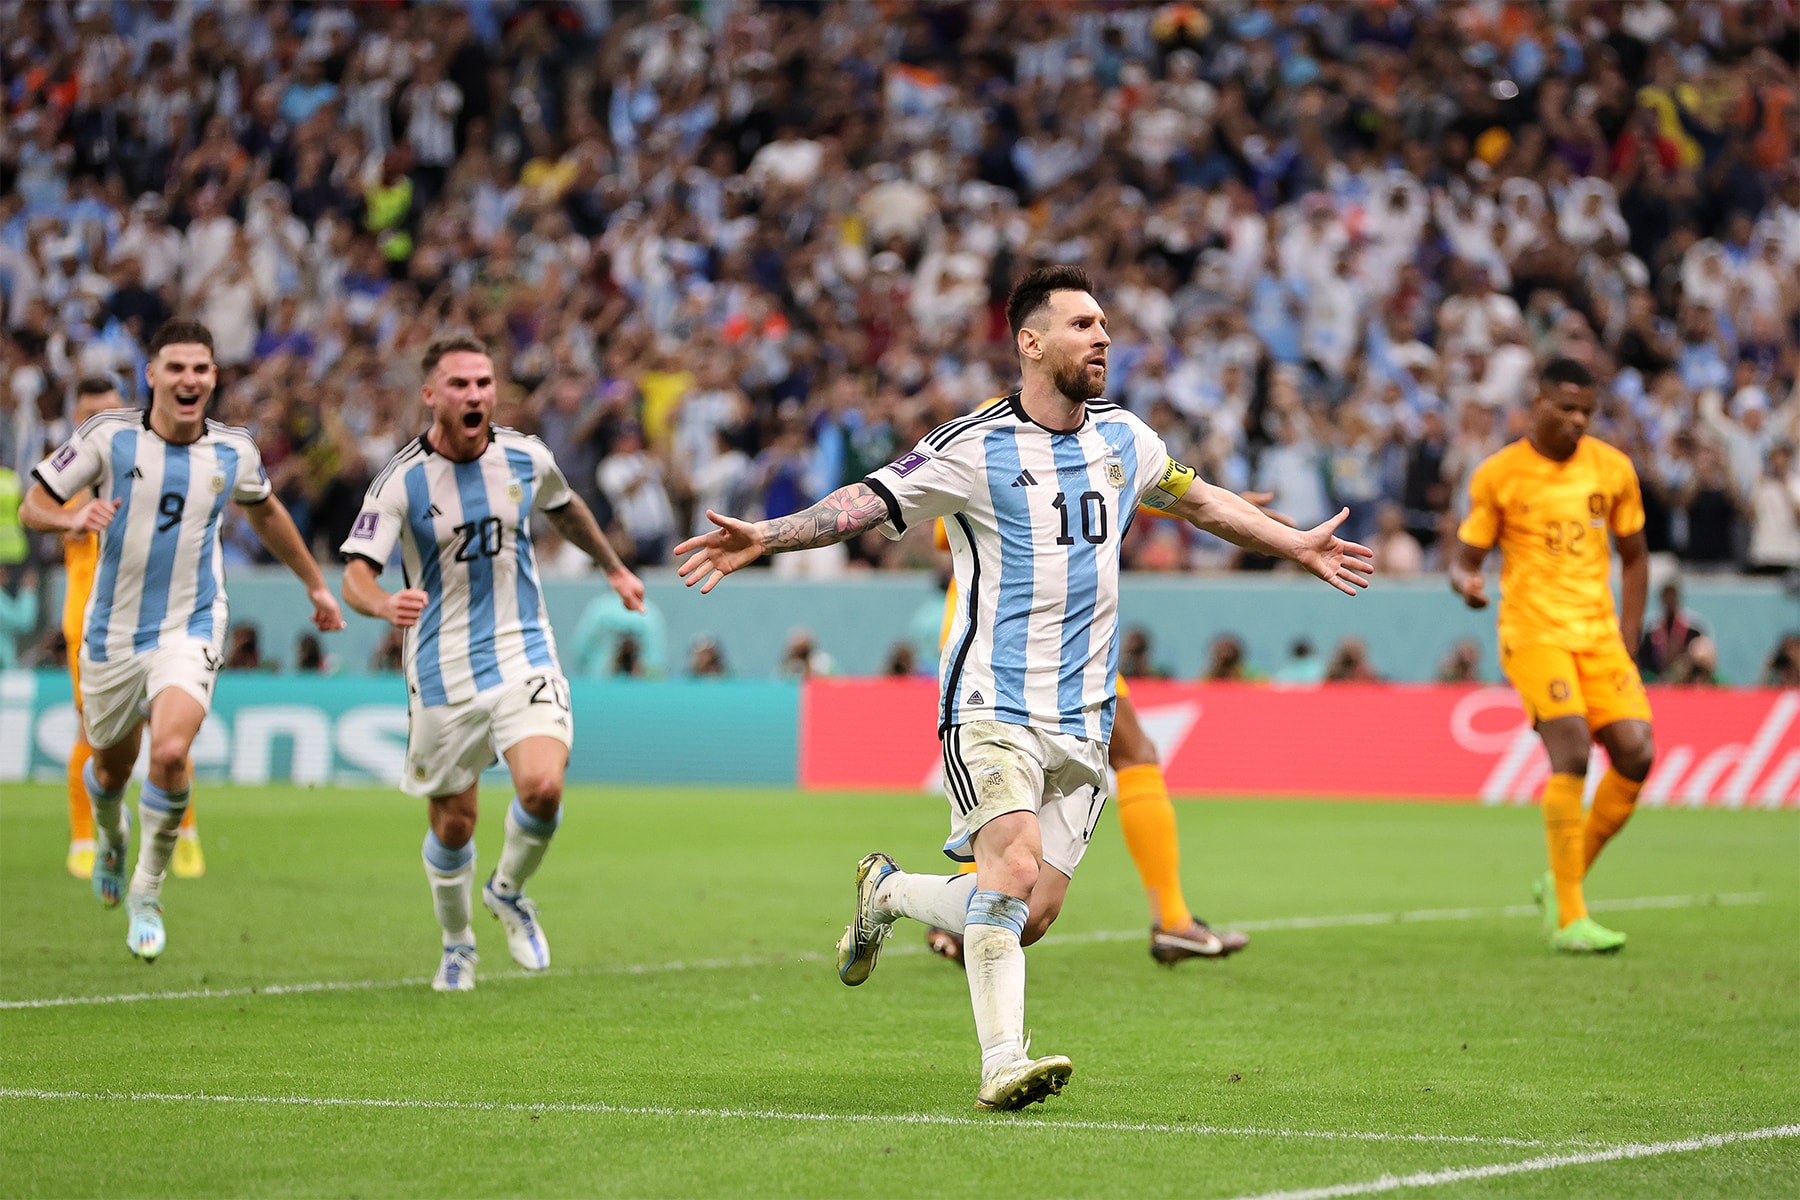 2022 世界盃 – Lionel Messi 出色發揮帶領阿根廷擊敗荷蘭晉級四強賽